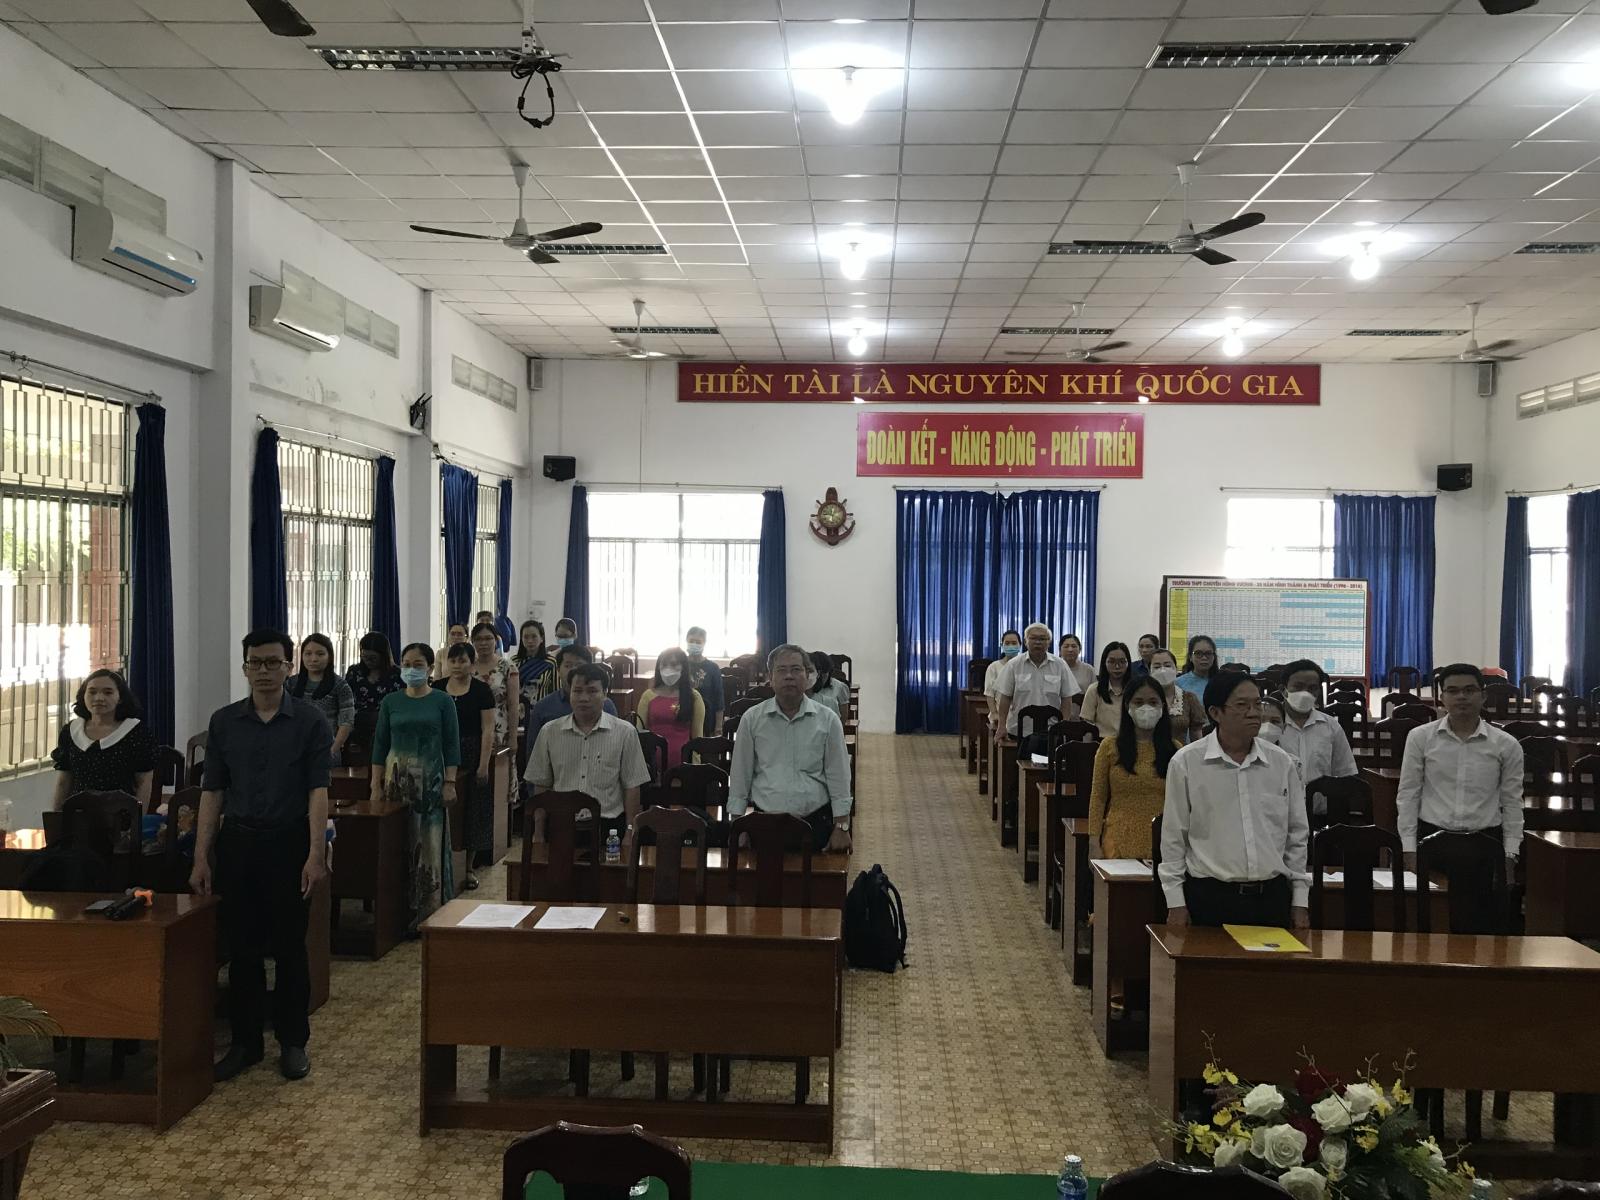 Chi bộ trường THPT chuyên Hùng Vương trong buổi lễ kết nạp đảng